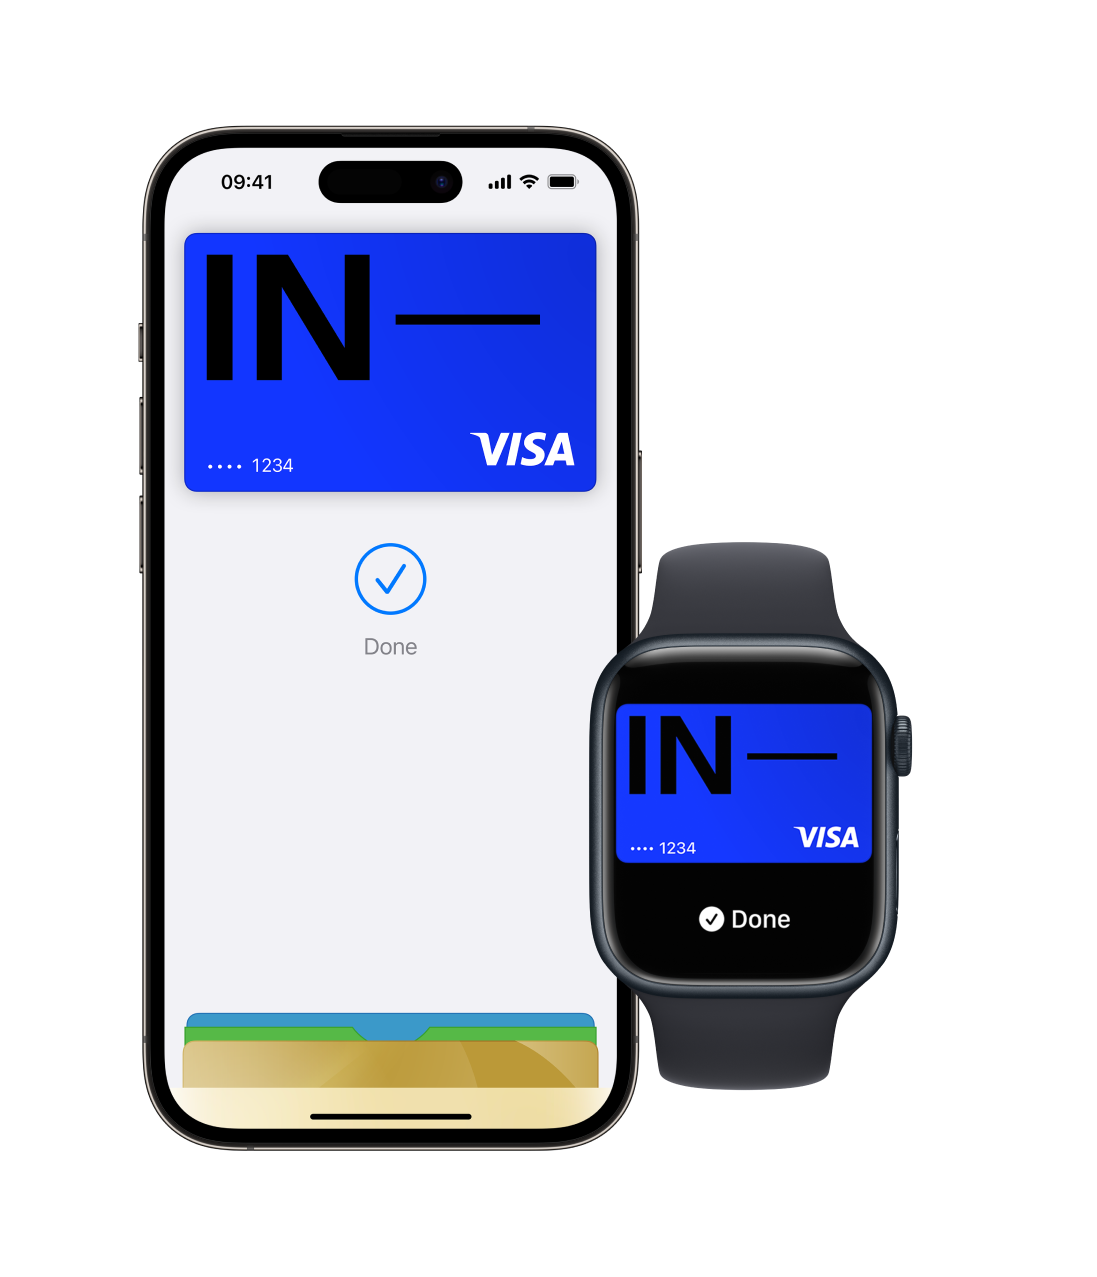 Bild eines iPhones und einer Apple Watch mit der Apple Wallet-App und mehreren Karten, wobei die Incharge-Karte oben positioniert ist. Dieses Bild zeigt die Apple Pay-Funktion mit digitaler Geldbörsenfunktion.